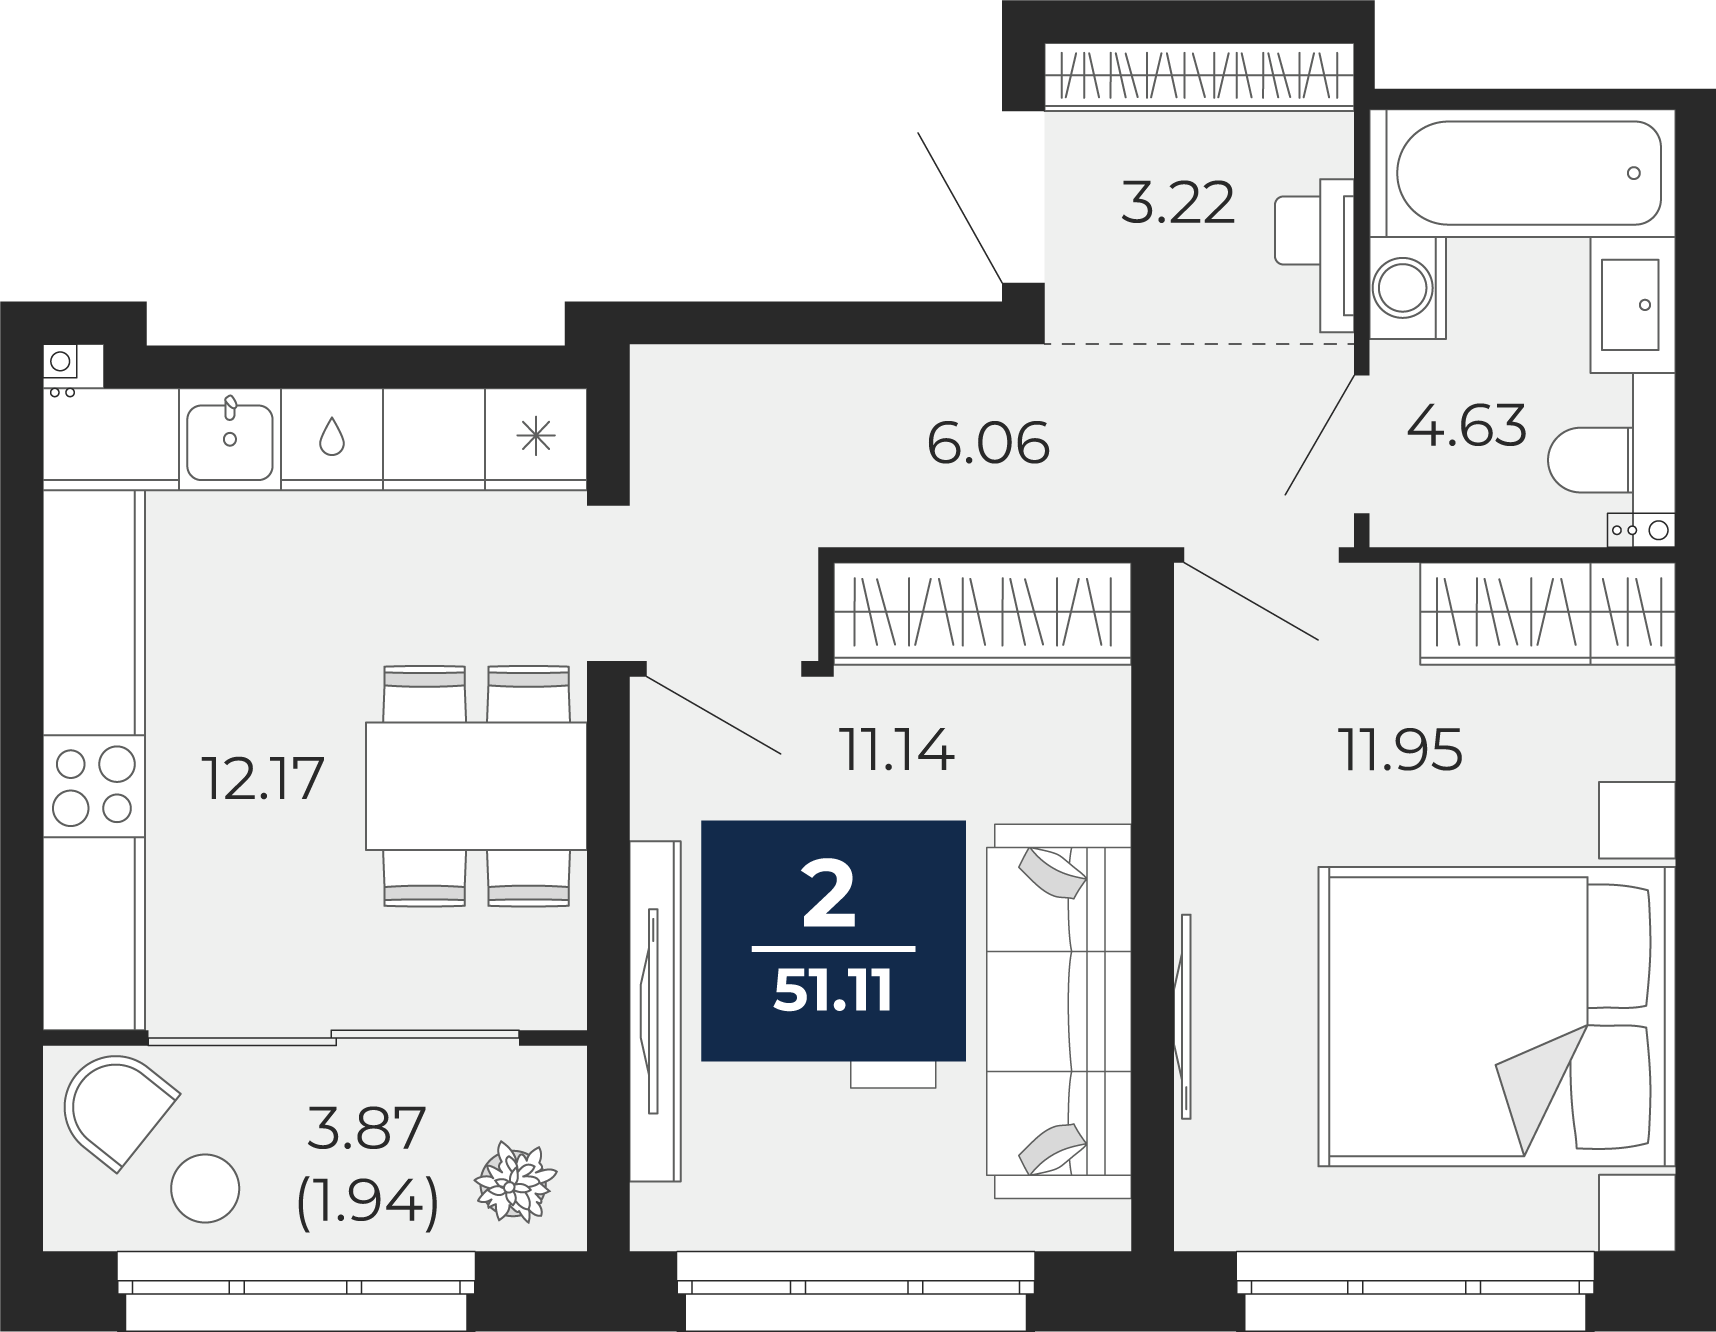 Квартира № 14, 2-комнатная, 51.11 кв. м, 4 этаж